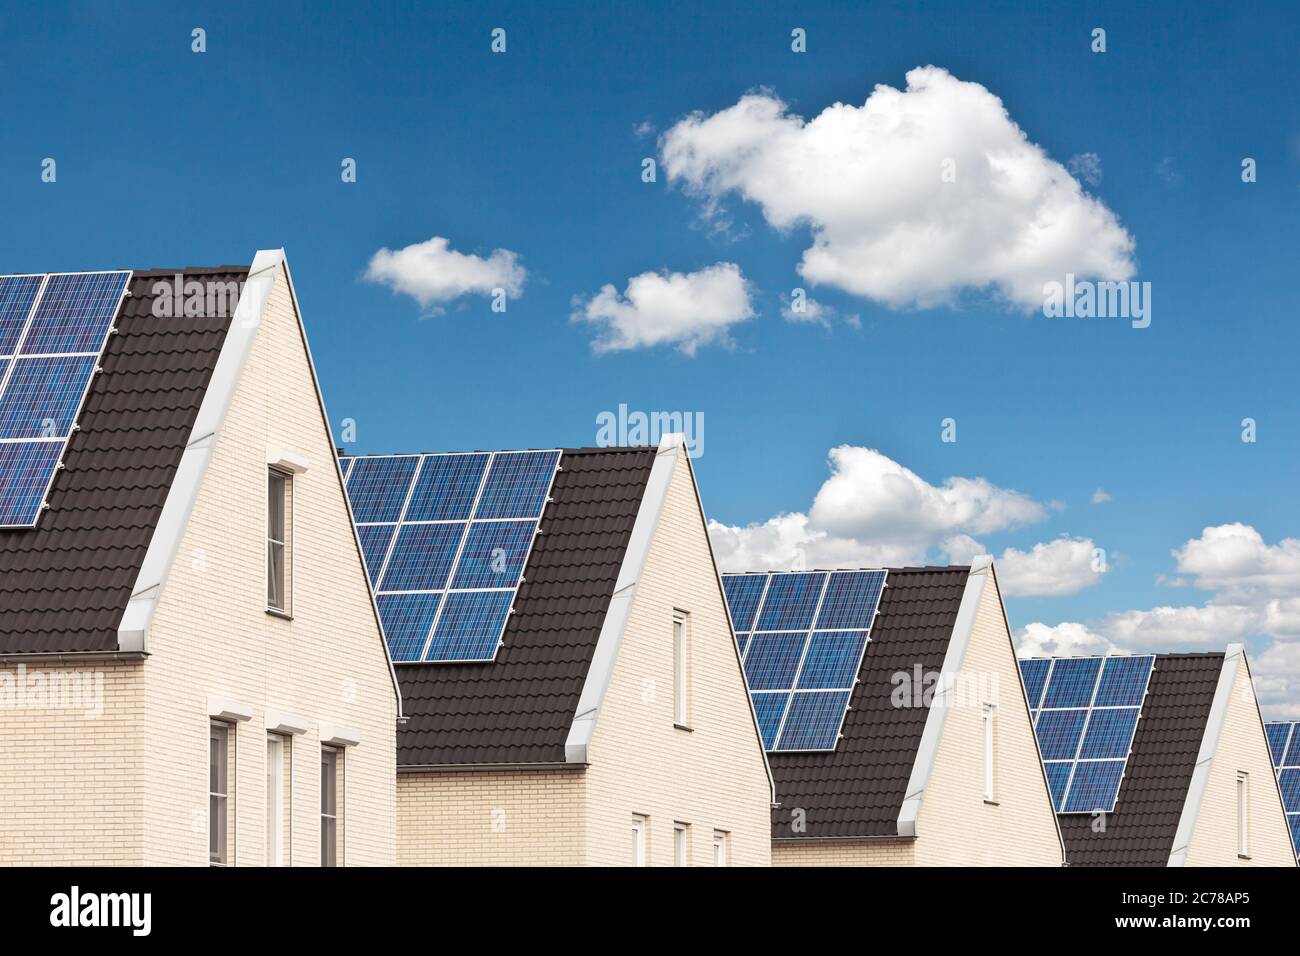 Reihe von niederländischen neuen Häusern mit Solarzellen auf den Dächern befestigt Stockfoto